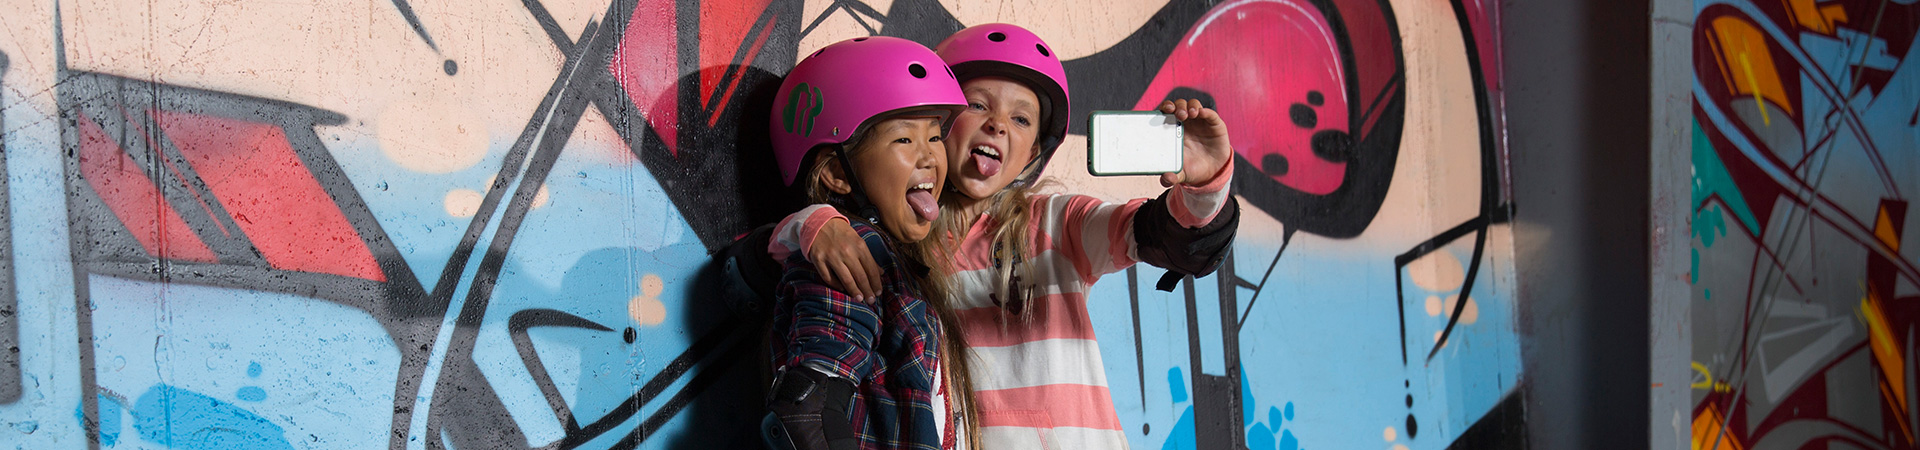  two girls wearing pink skateboarding helmets taking selfie against graffiti wall 